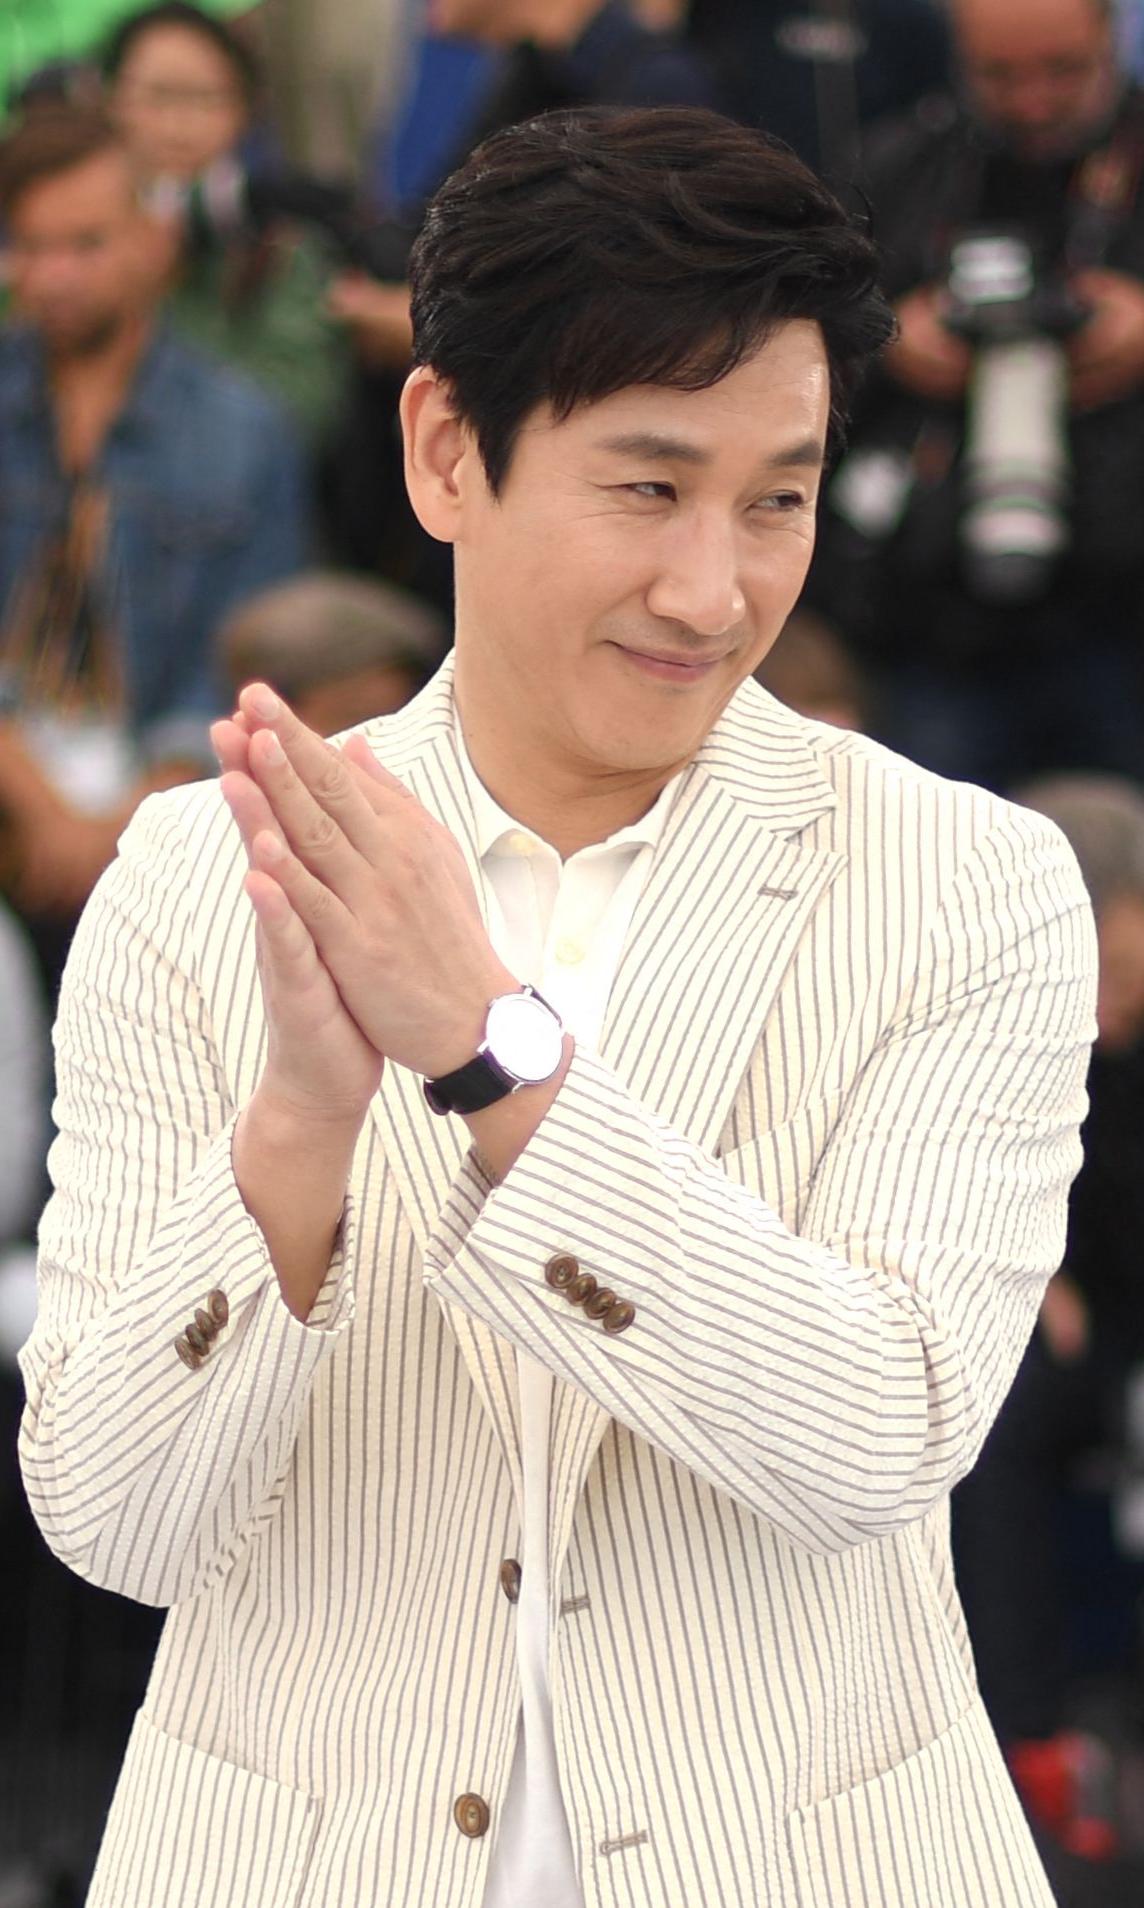 Mort de l'acteur sud-coréen Lee Sun-kyun, connu pour son rôle dans